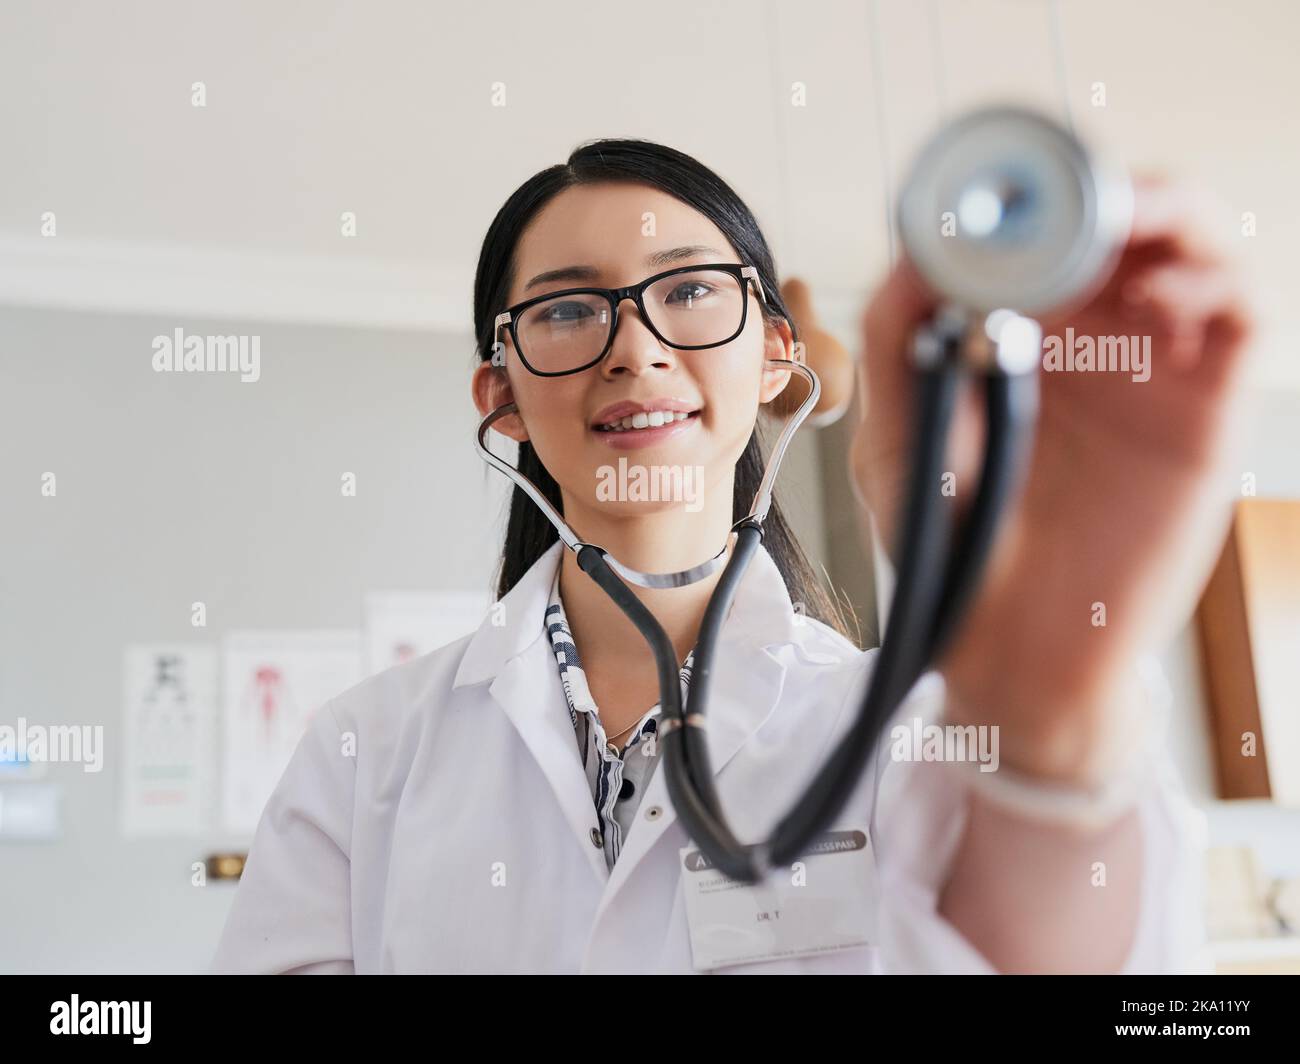 Eine junge Ärztin, die sich mit einem Stethoskop ausstreut, um Ihrem Herzschlag zuzuhören. Stockfoto